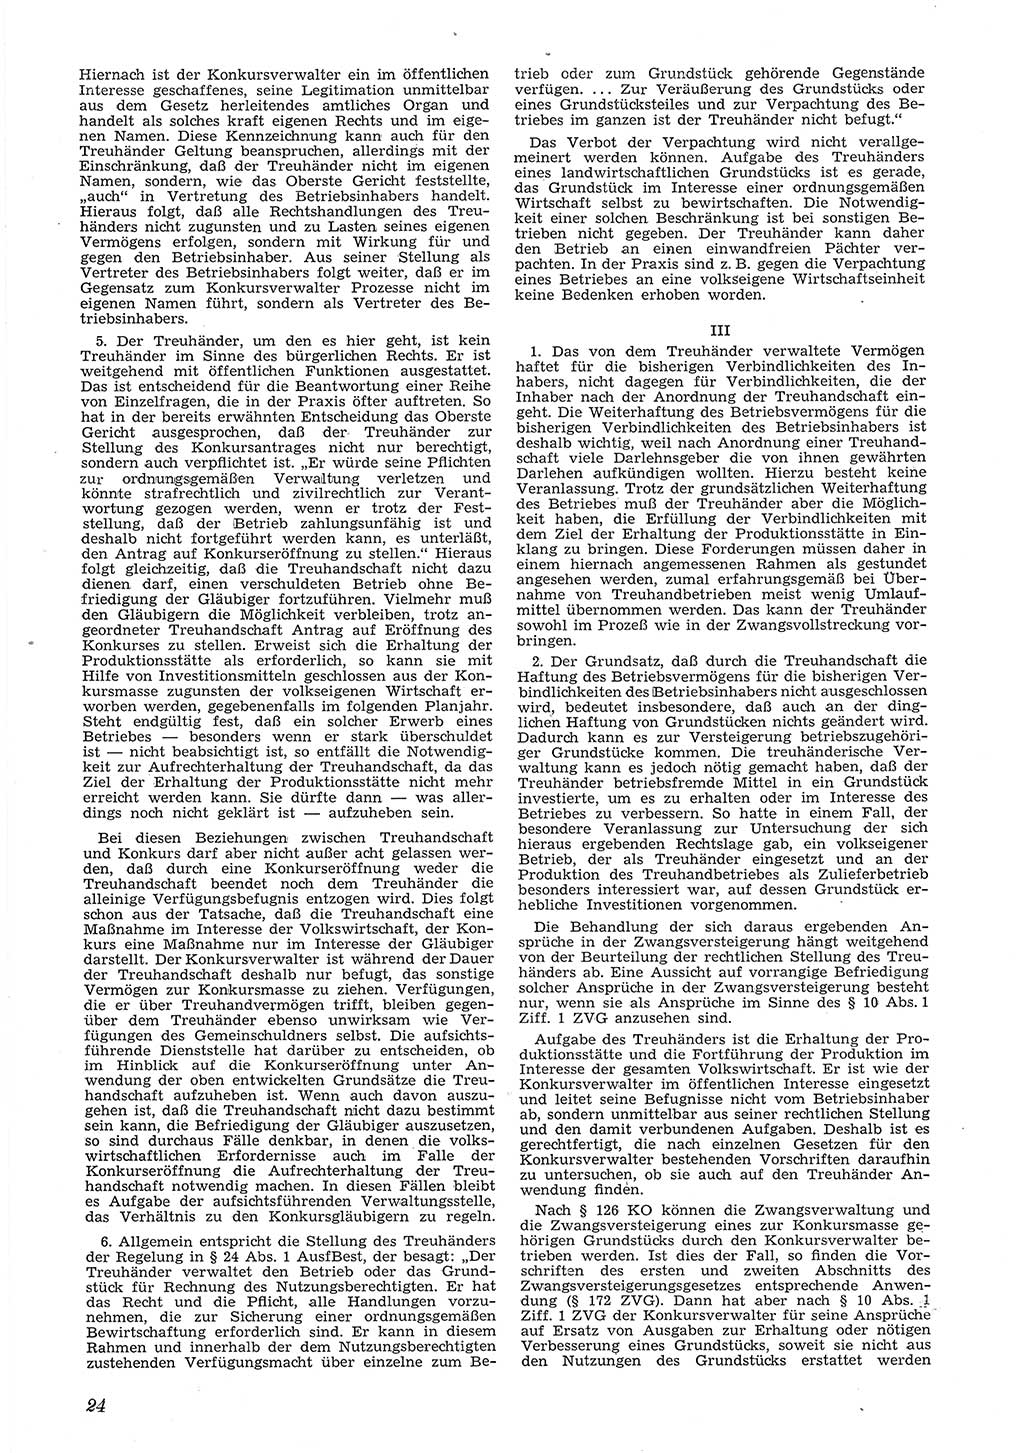 Neue Justiz (NJ), Zeitschrift für Recht und Rechtswissenschaft [Deutsche Demokratische Republik (DDR)], 6. Jahrgang 1952, Seite 24 (NJ DDR 1952, S. 24)